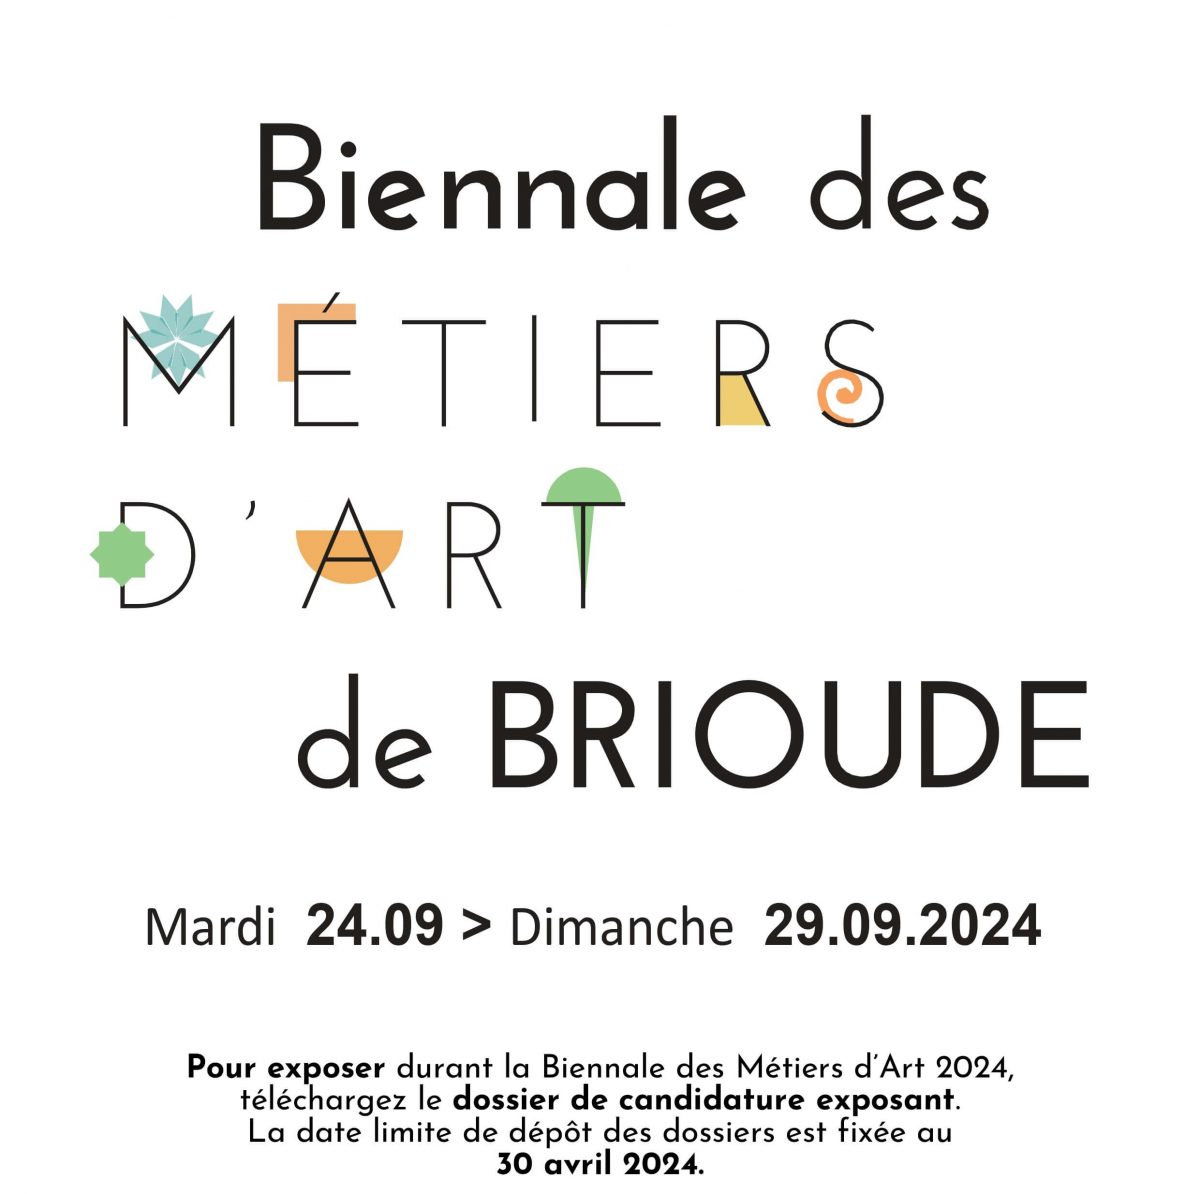 Biennale des métiers d'art de Brioude